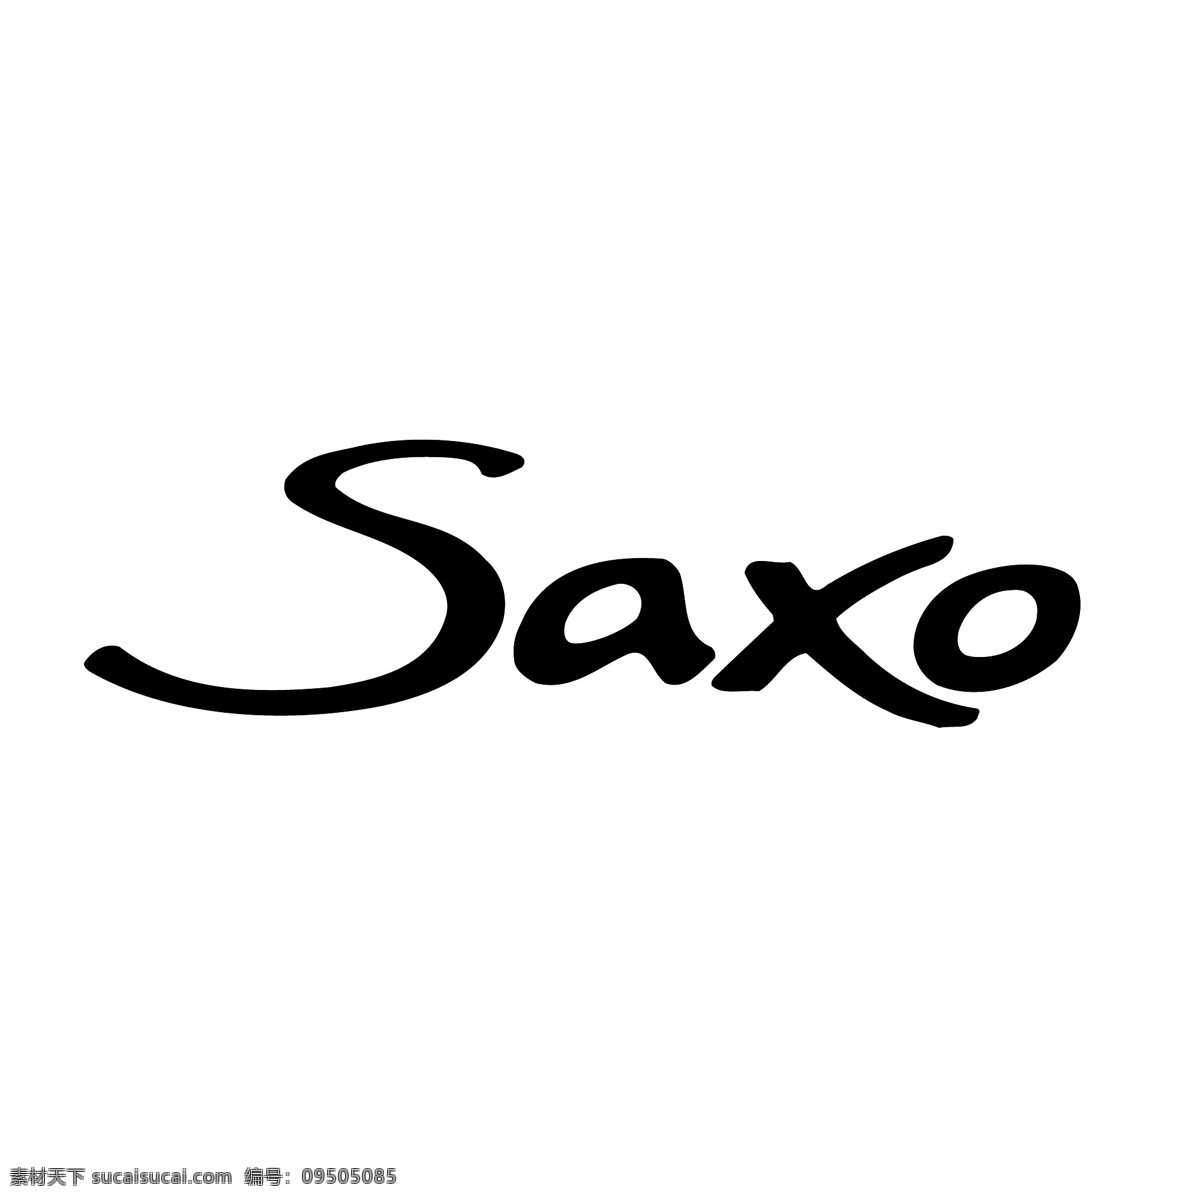 saxo 该矢量 矢量 标志 免费 载体 矢量saxo 该载体的设计 该矢量的自由 蓝色